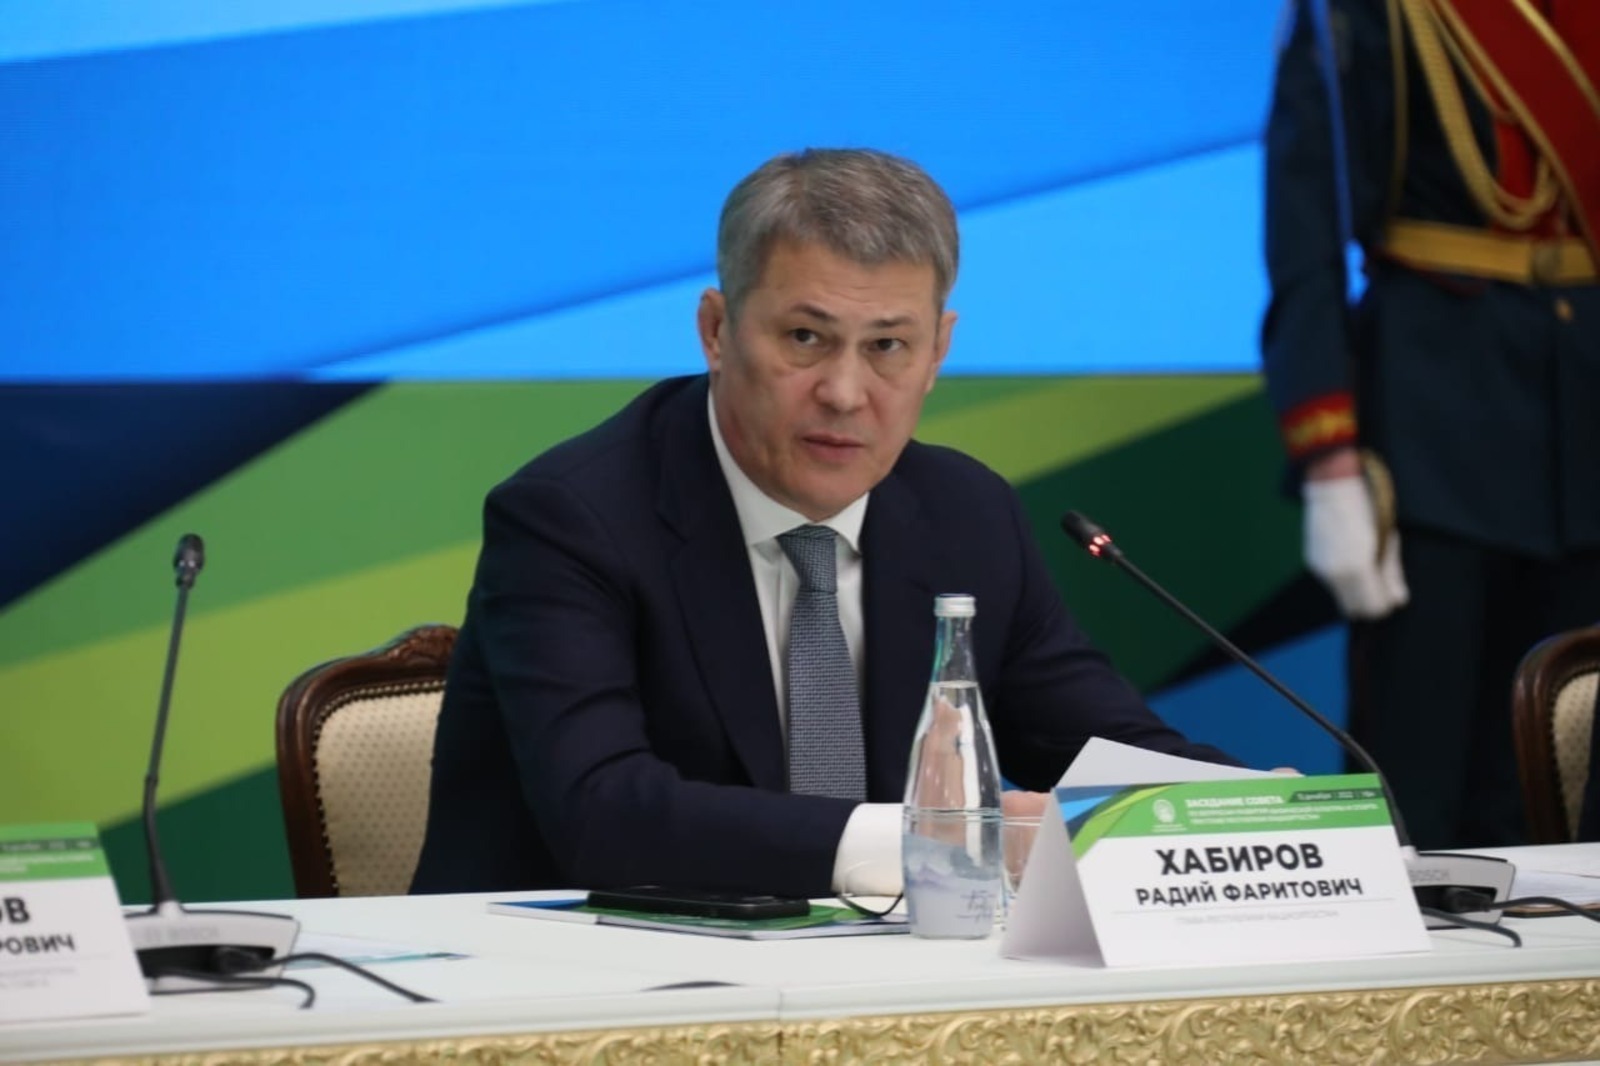 Глава Башкирии подписал указ об учреждении государственных спортивных стипендий Республики Башкортостан